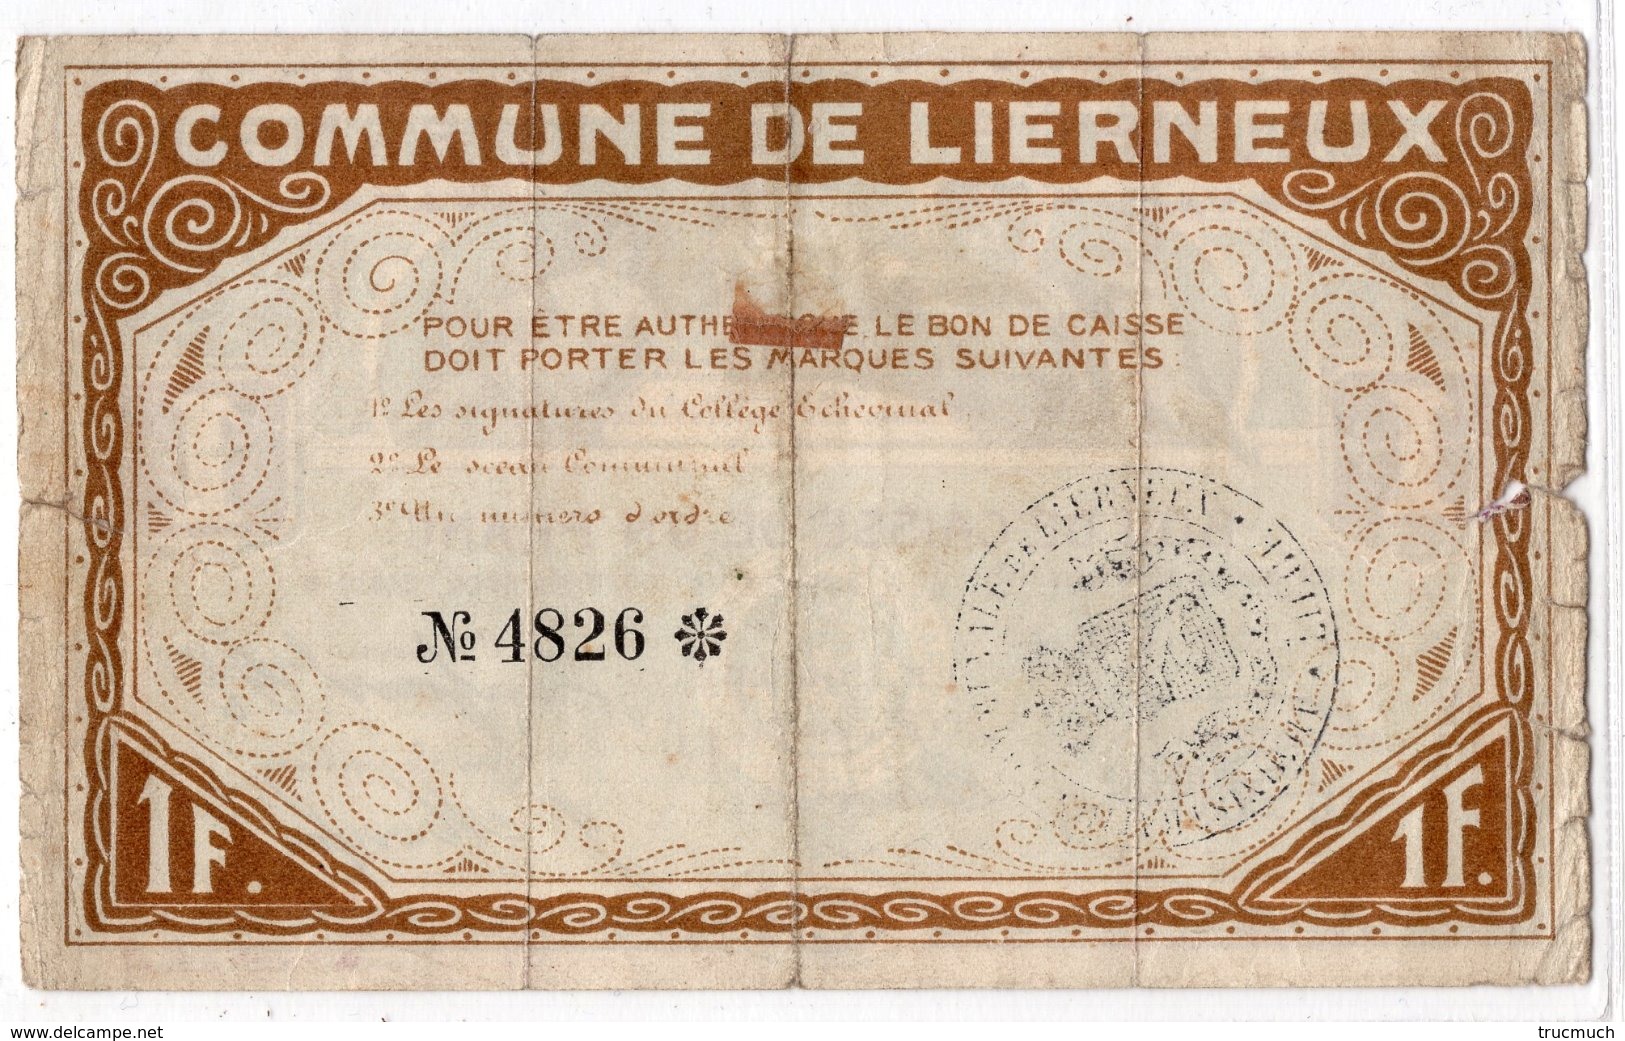 BON DE CAISSE   -  Billet De Nécessité  -  LIERNEUX -  1 Franc - 25 Avril 1915  -  *RARE* - 1-2 Franchi